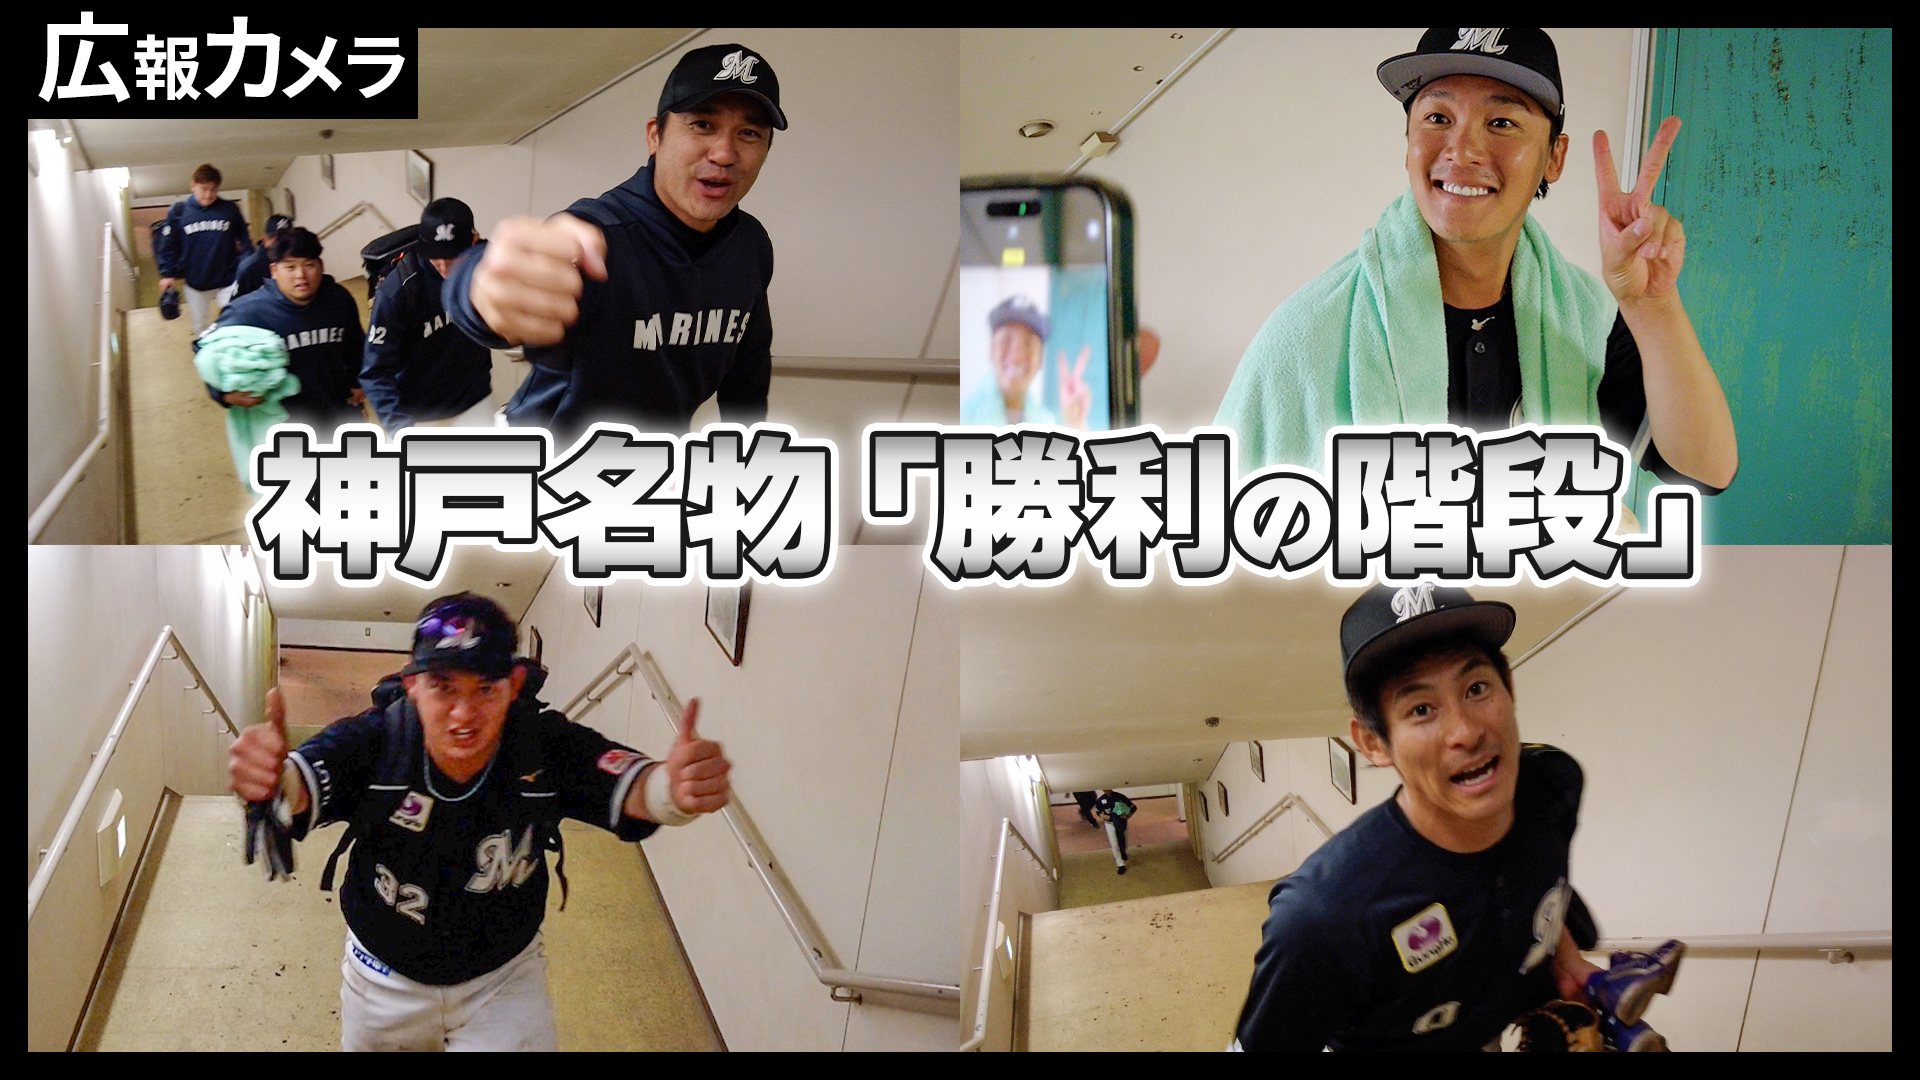 神戸名物、勝利の階段を駆け上がる選手たちをカメラが撮影【広報カメラ】